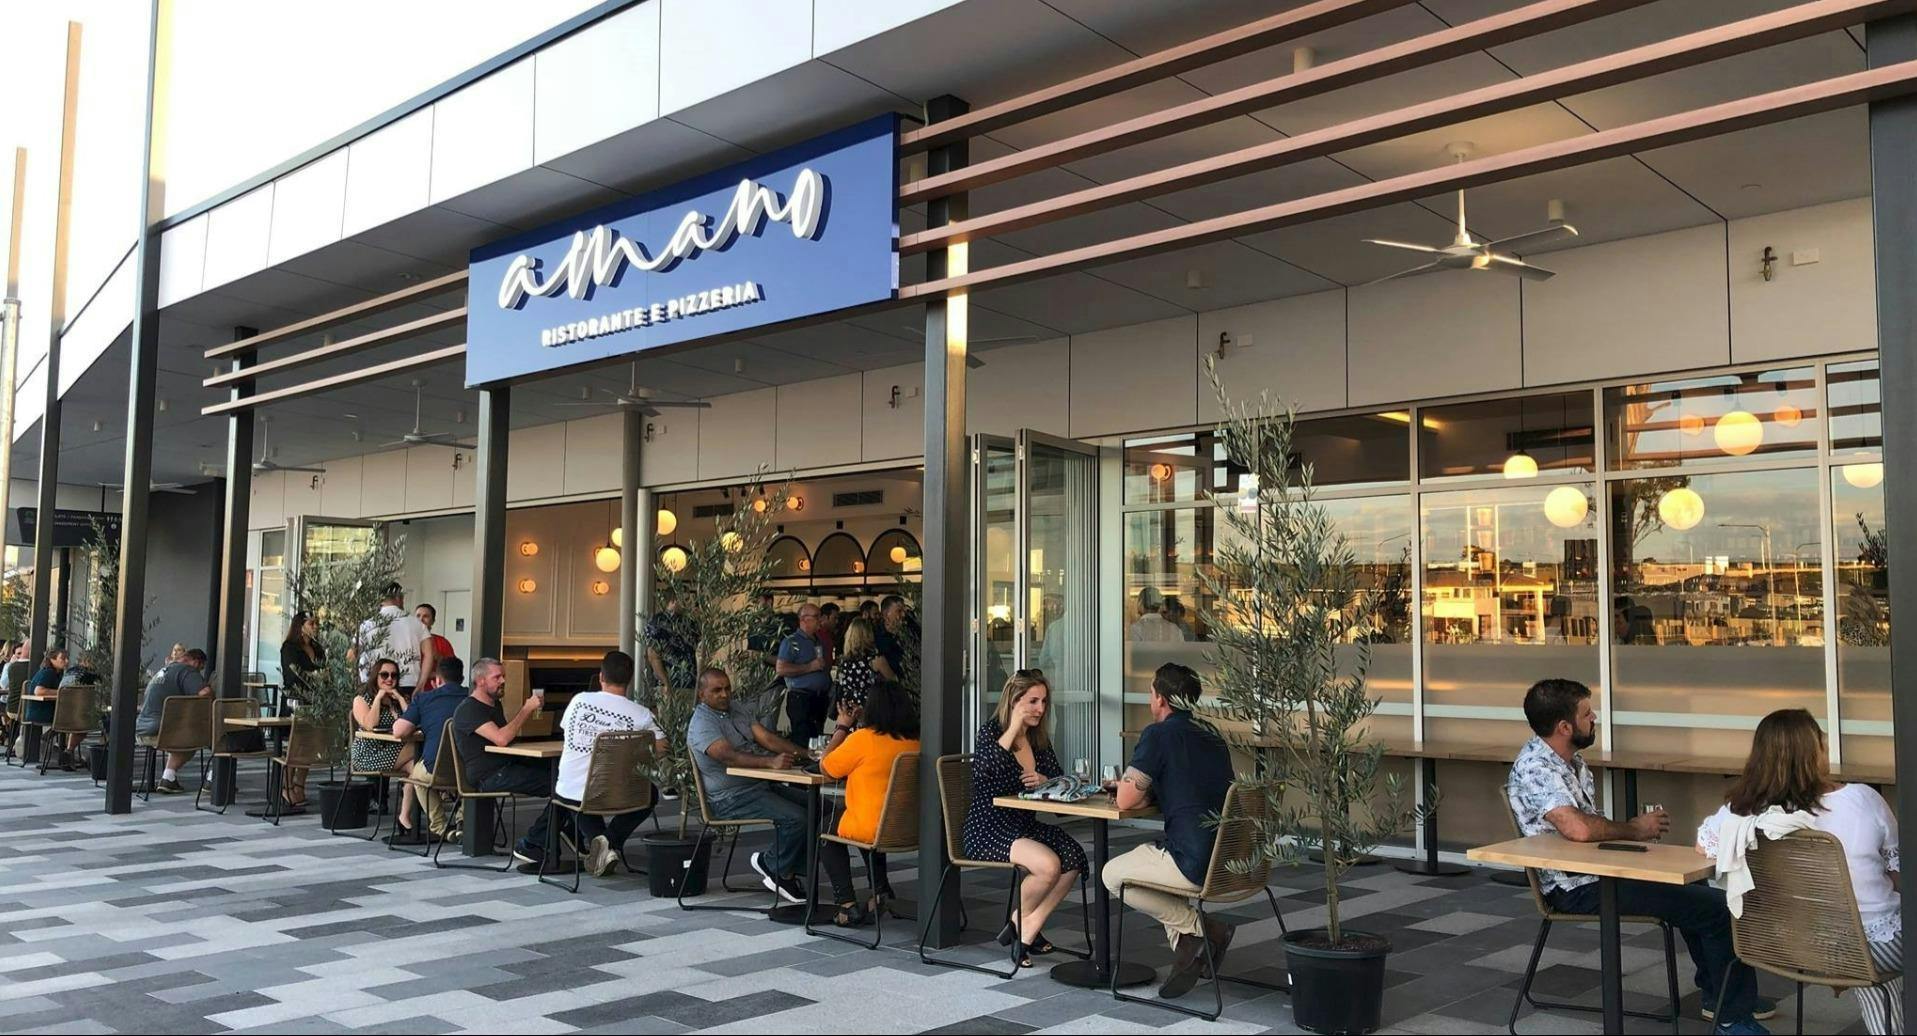 Photo of restaurant Amano Ristorante e Pizzeria in Narellan, Sydney